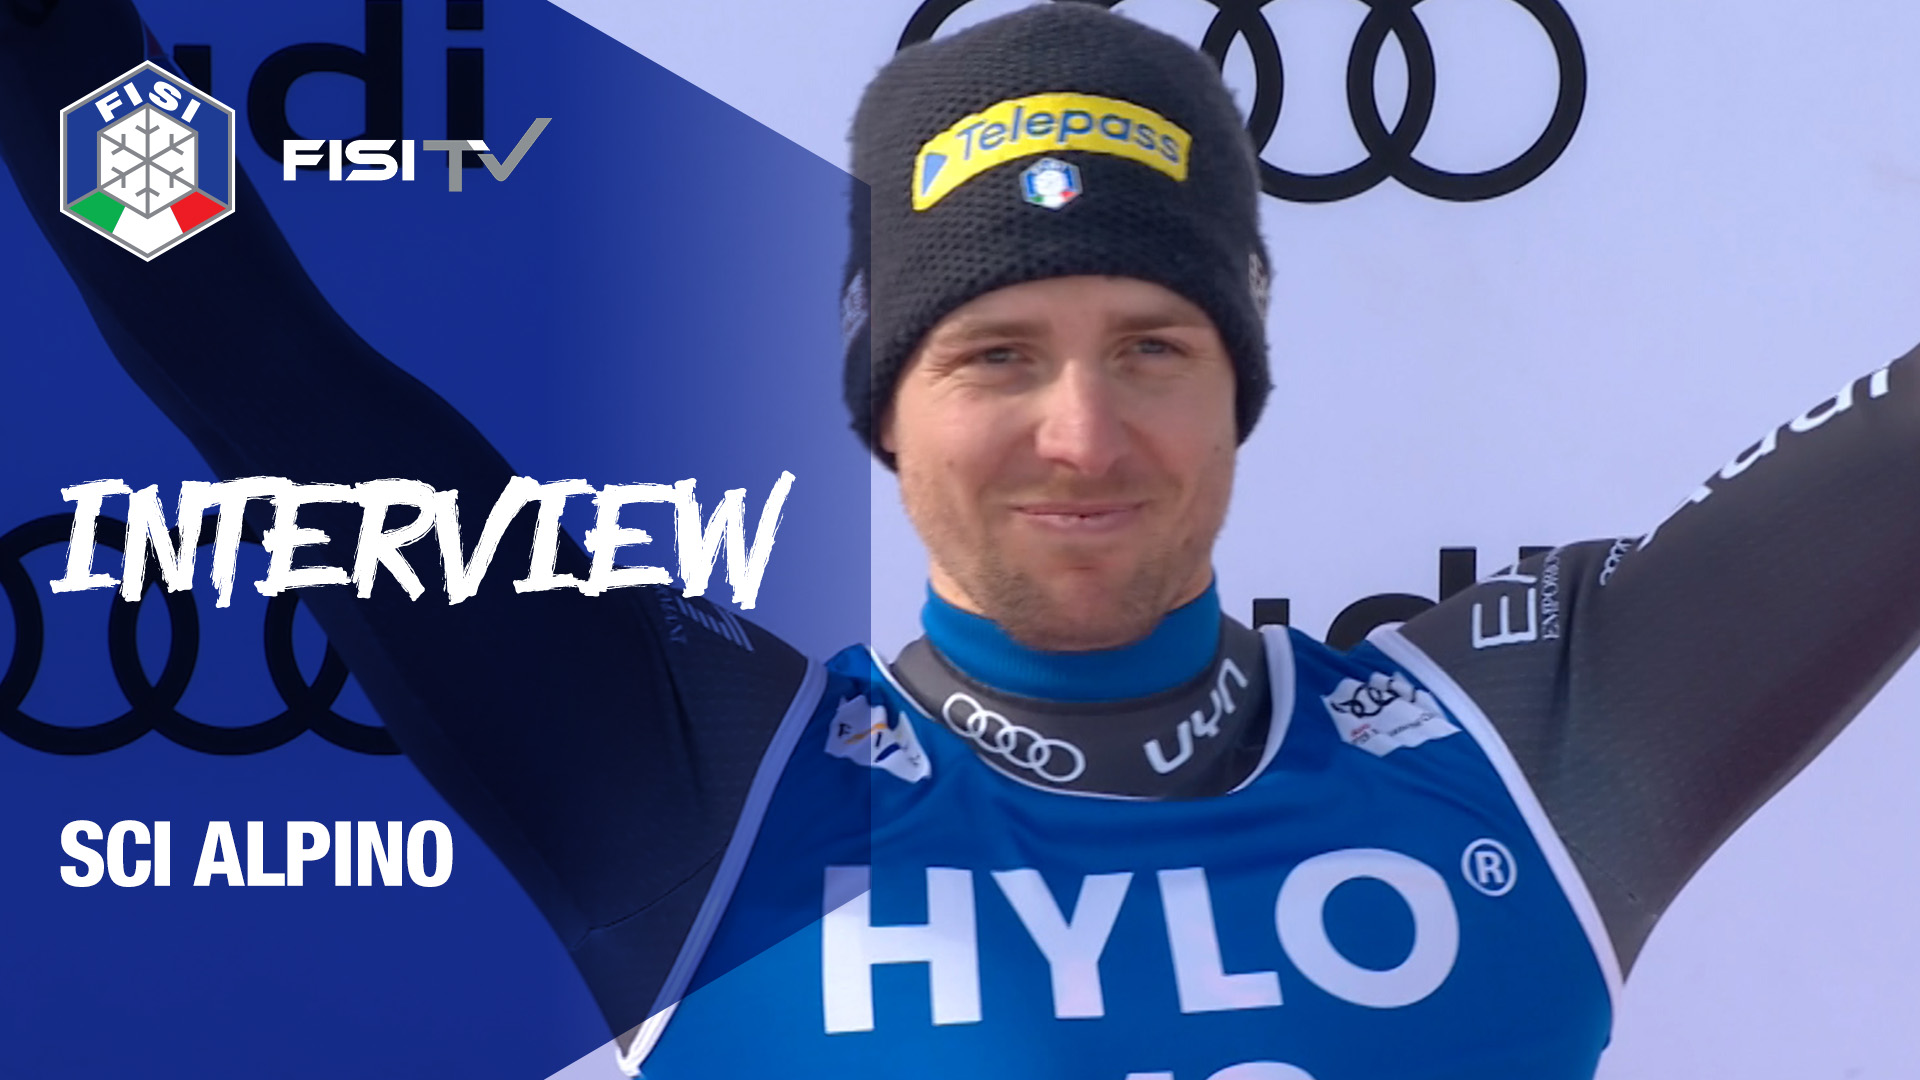 Le parole di Mattia Casse dopo il podio conquistato a Cortina | FISI TV